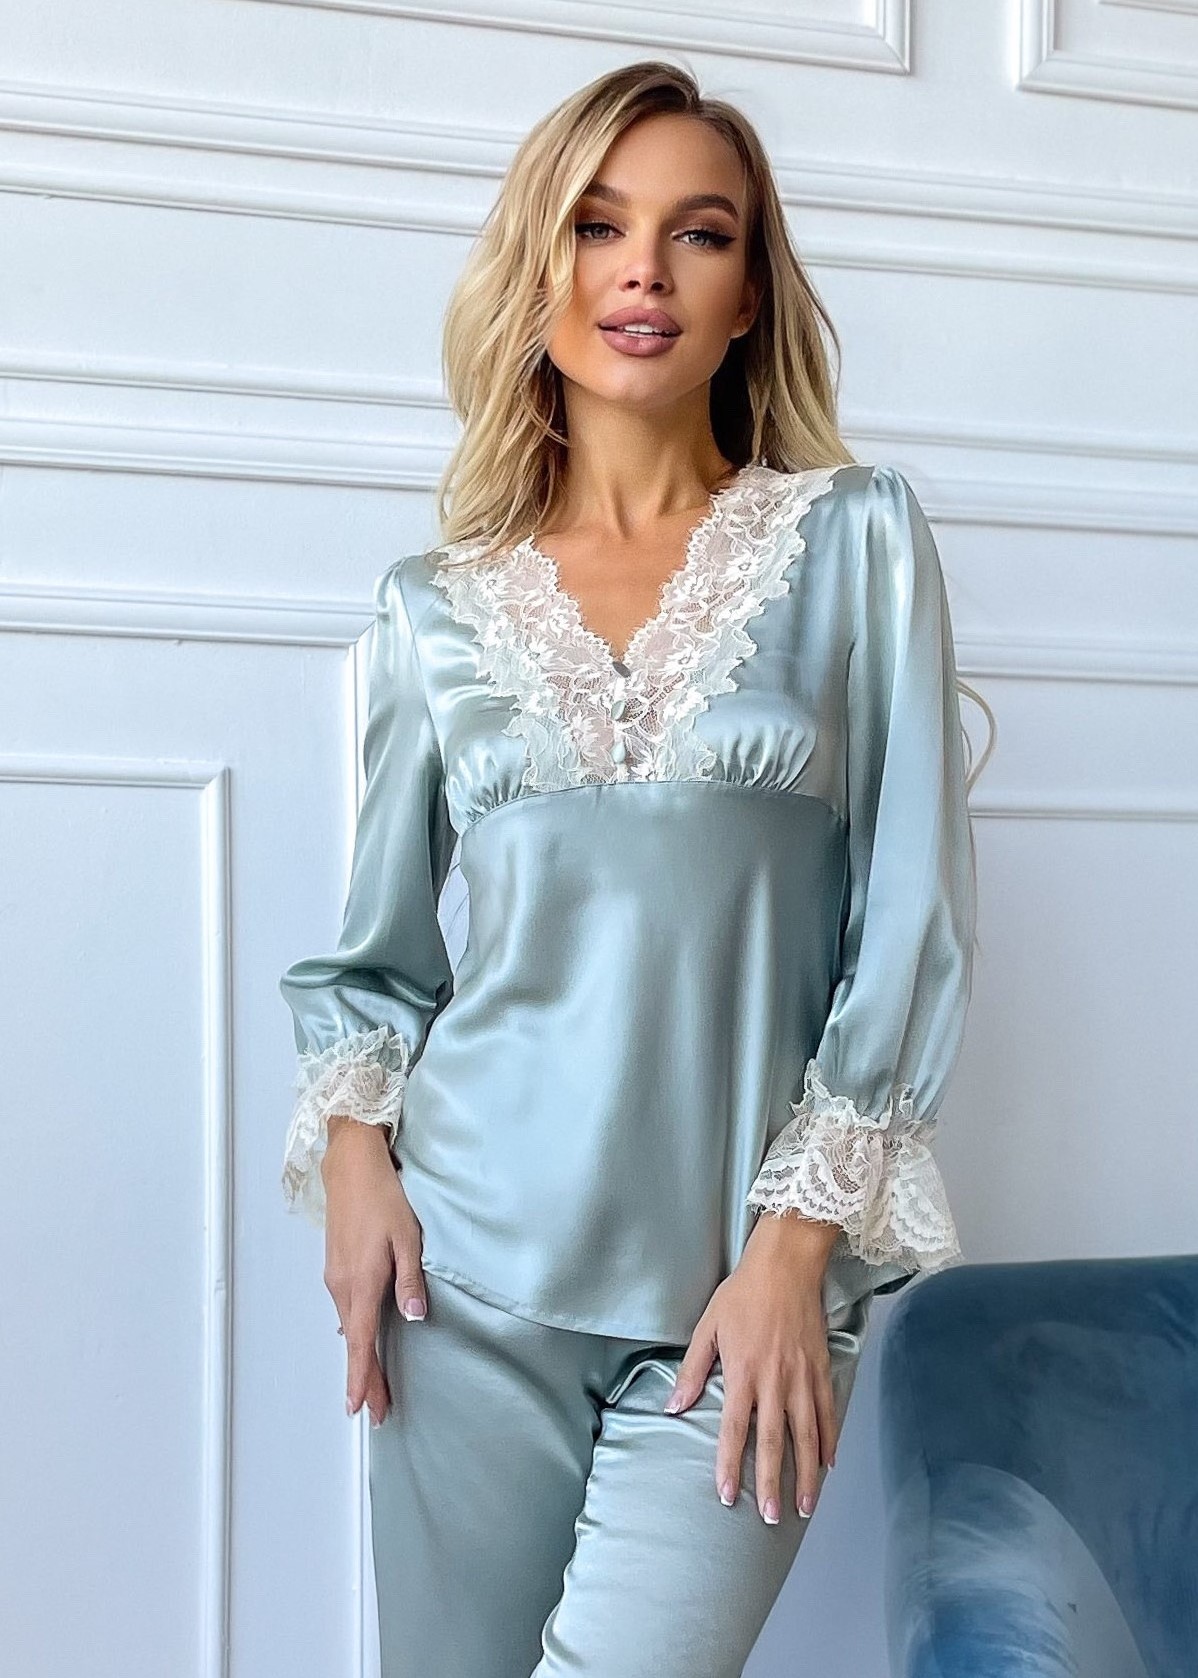 Купить шелковые пижамы - Цена от грн в интернет-магазине Intimo